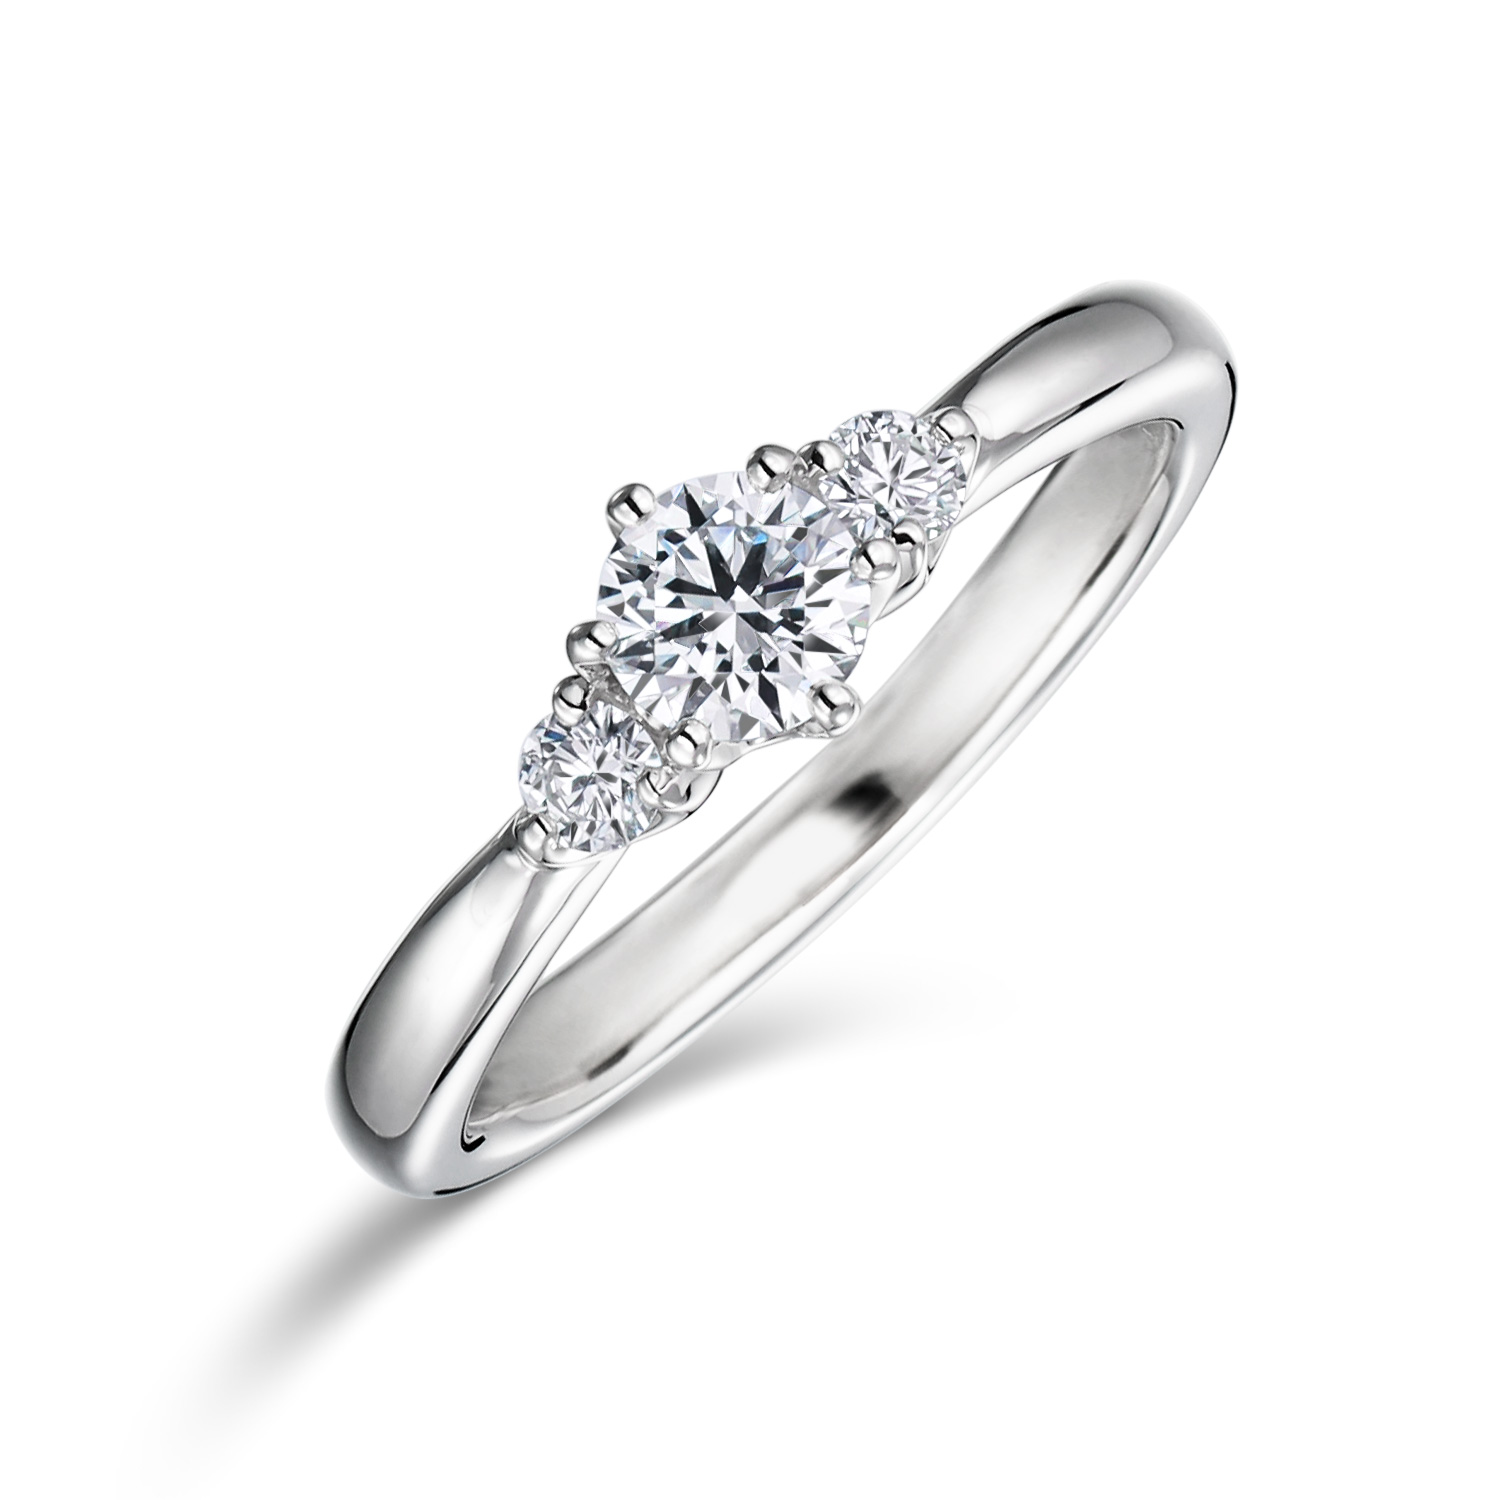 婚約指輪 Trilogy 0.30ct ダイヤモンド プラチナ(Pt950) メレ・サイドストーン | 婚約指輪の通販 | 山梨・甲府の